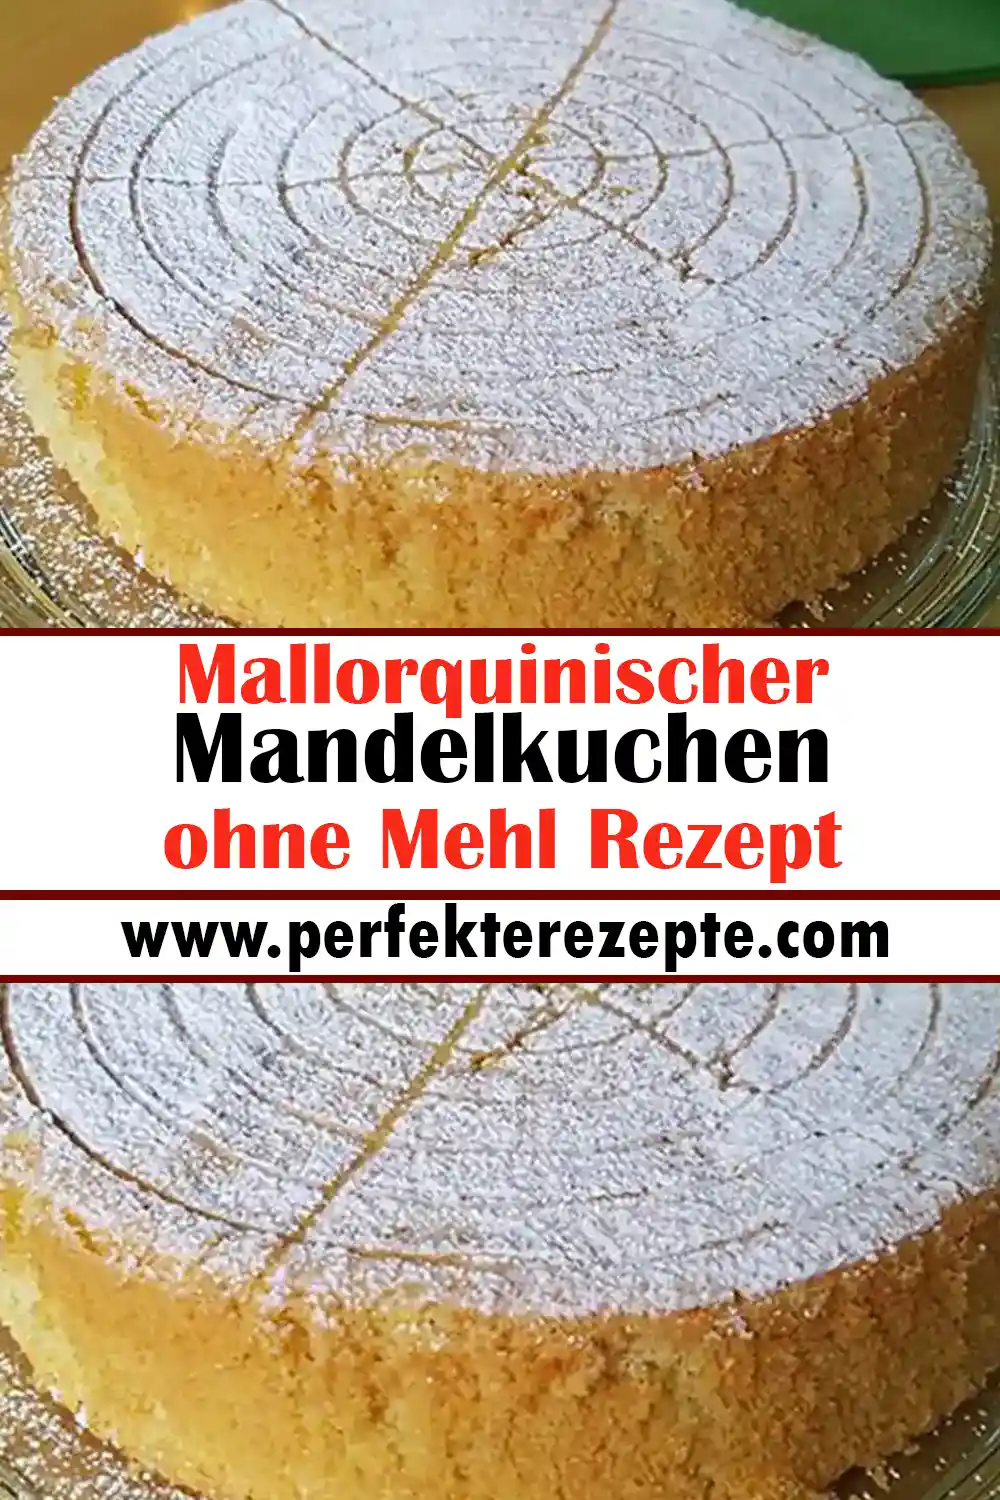 Mallorquinischer Mandelkuchen ohne Mehl Rezept